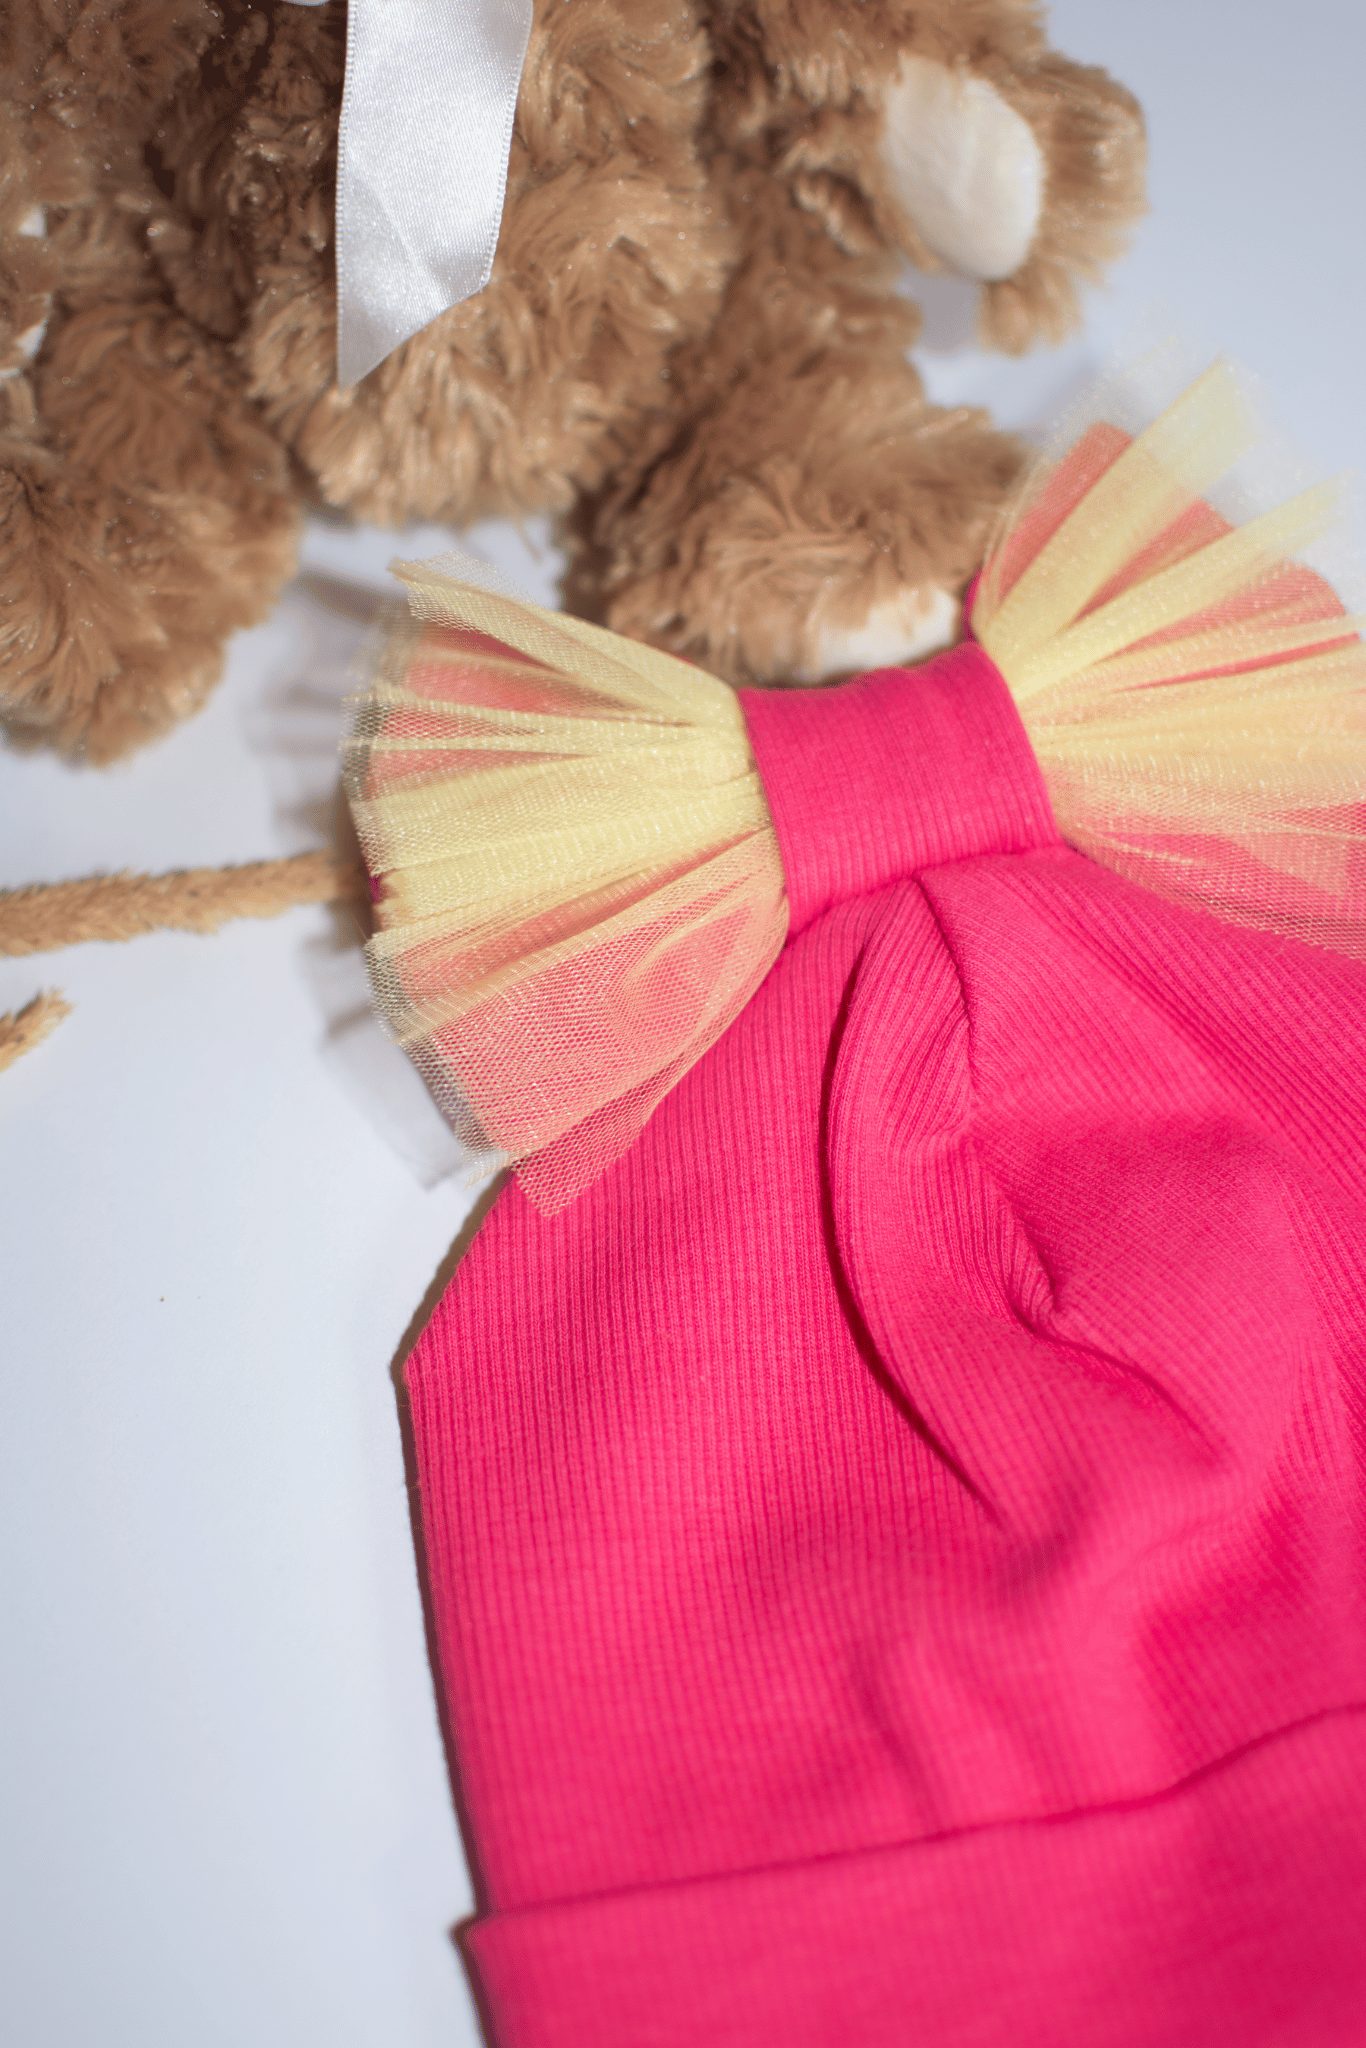 Ryškiai rožinės spalvos RIB kepurės ir šaliko/movos komplektai vaikams - Stiliaus detalė